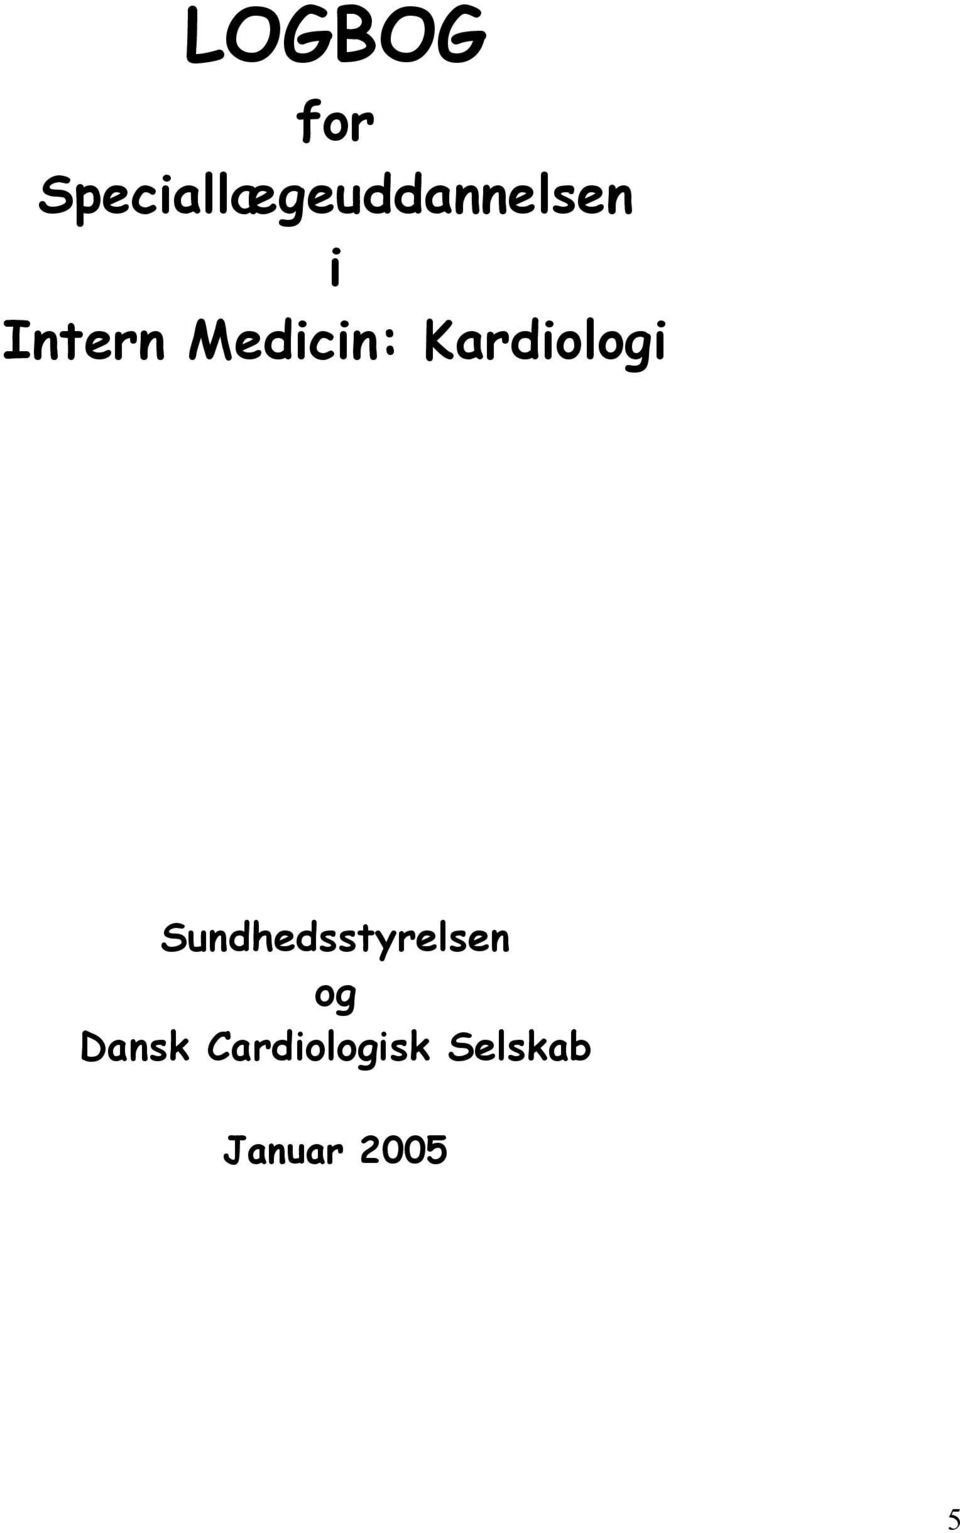 Intern Medicin: Kardiologi